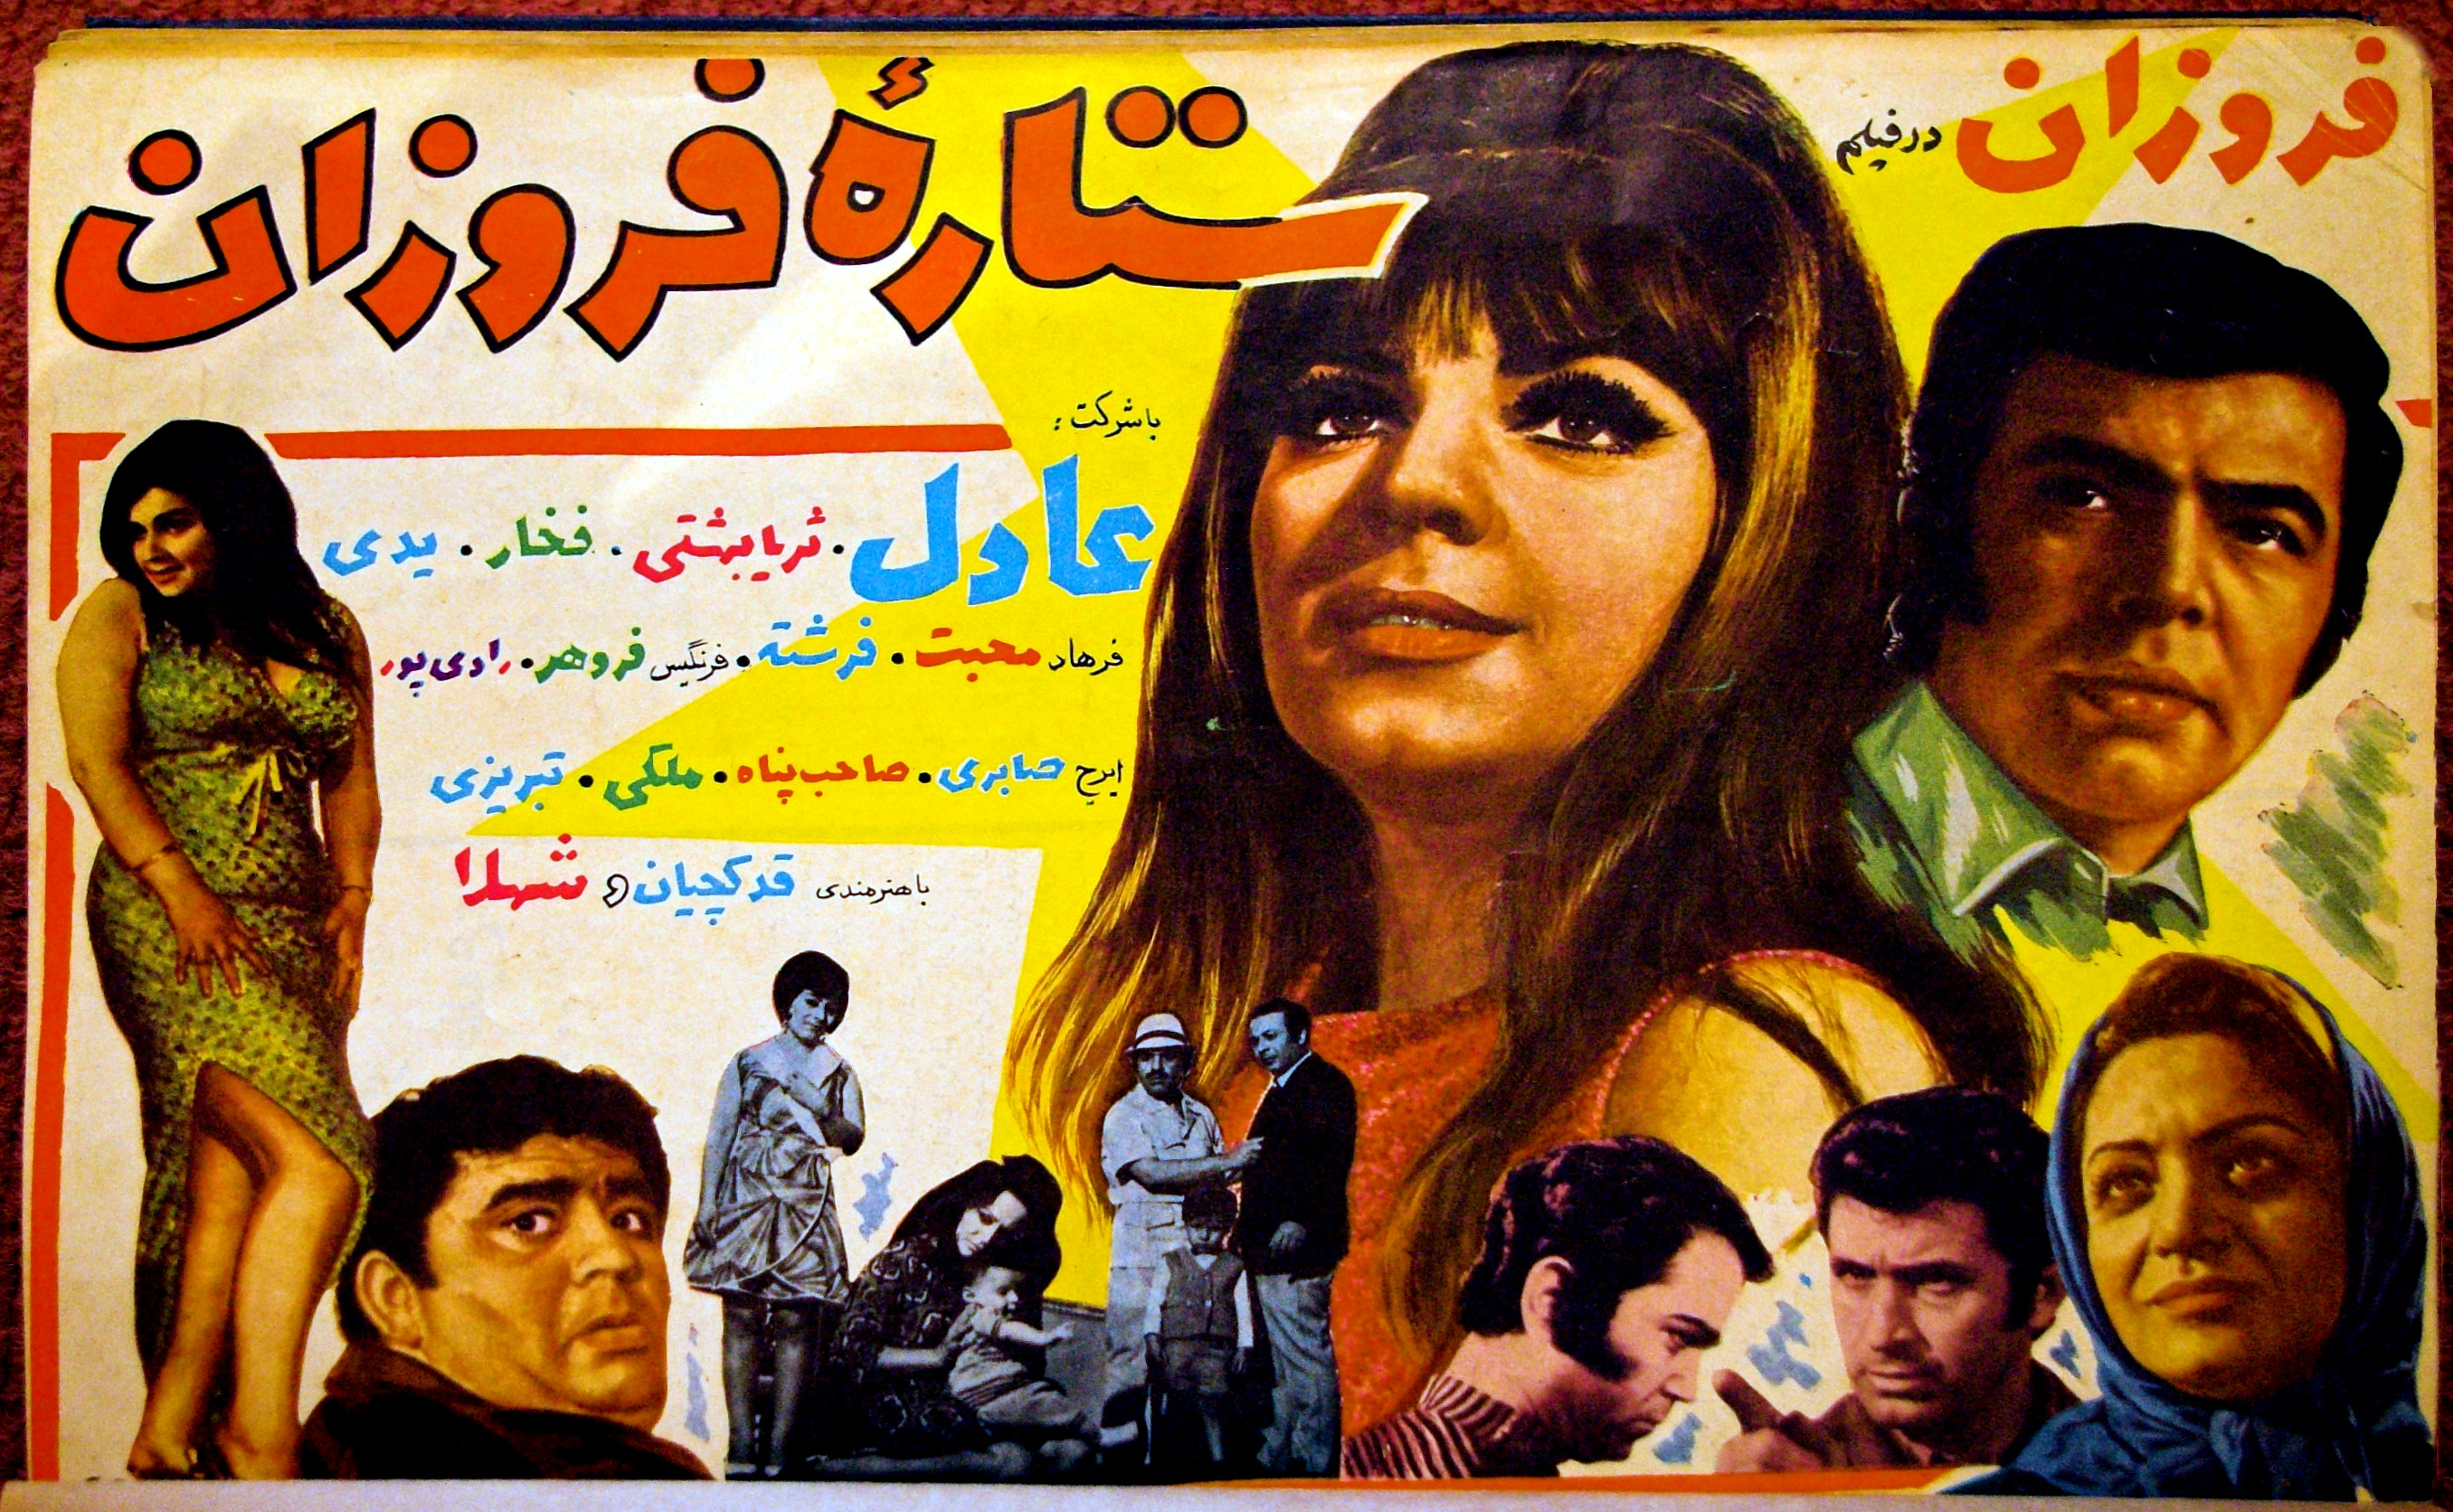 Cinema Iran